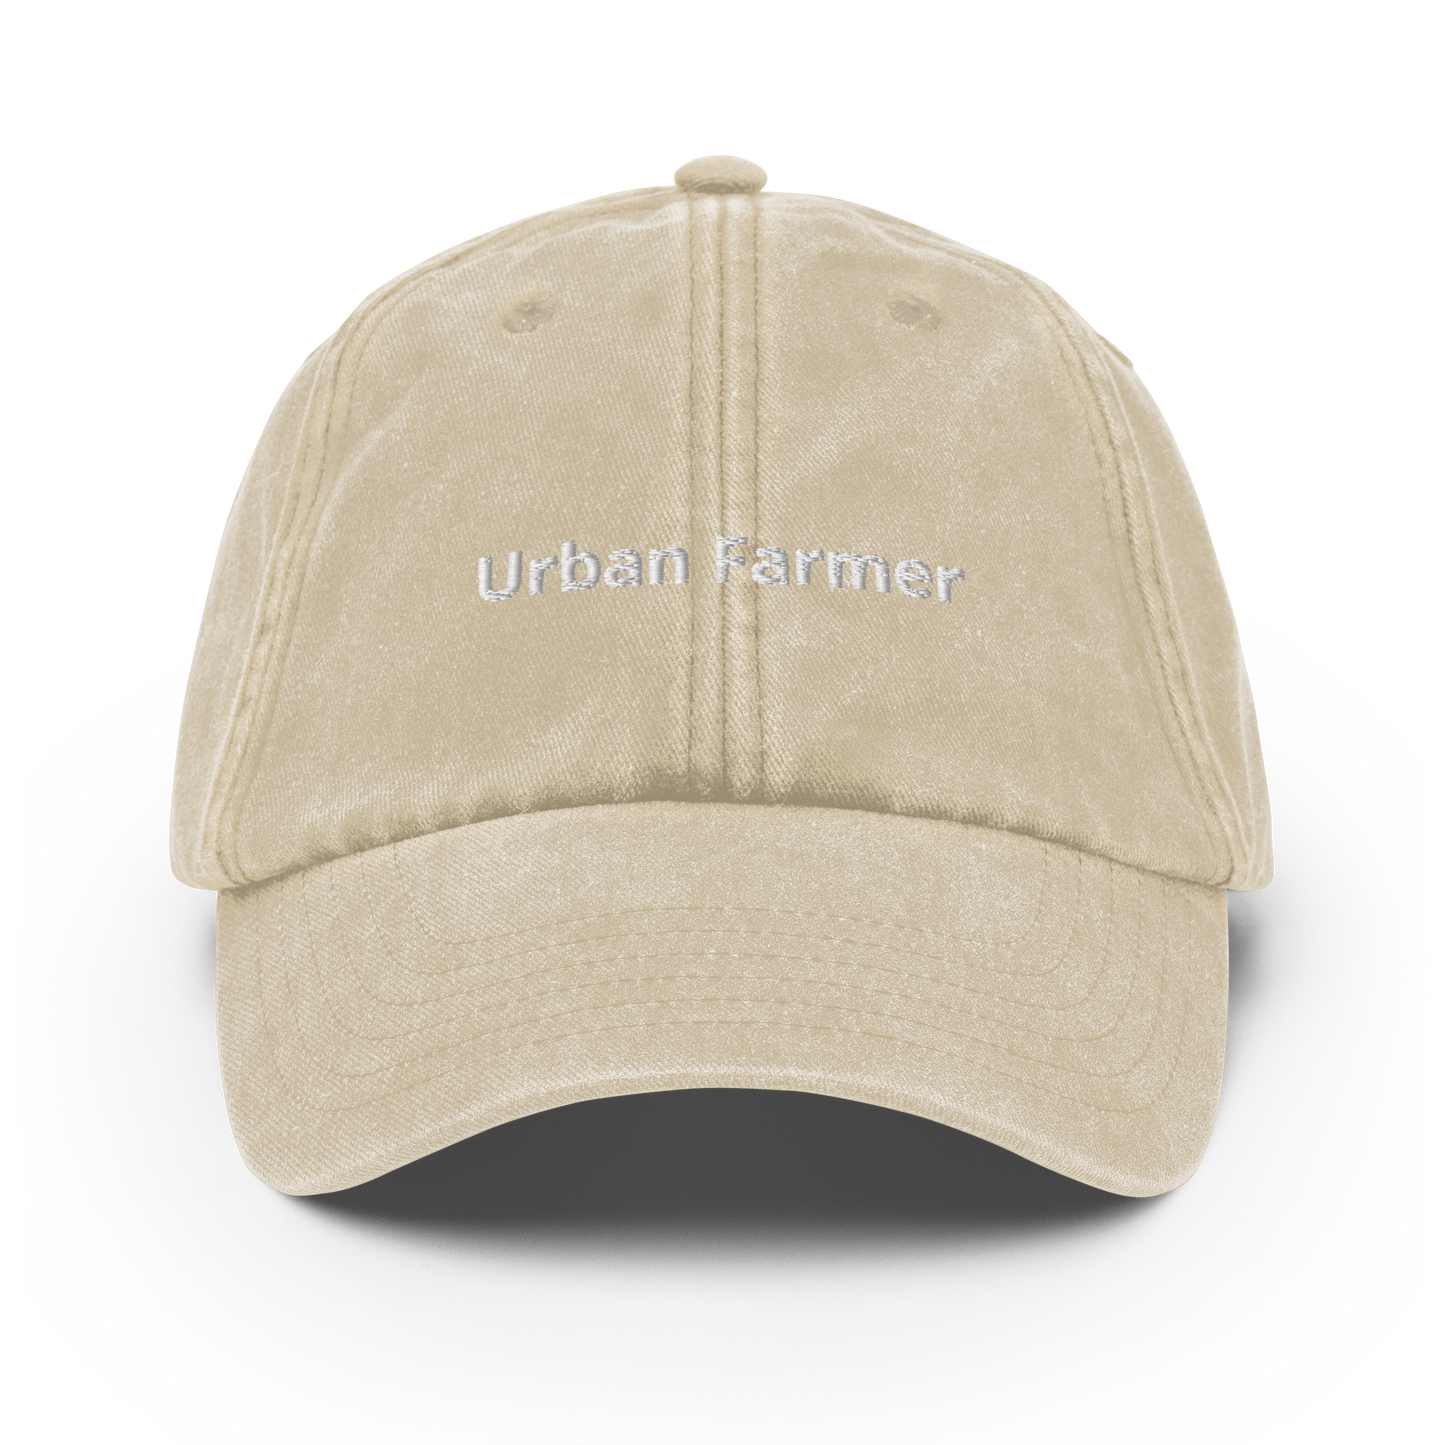 Urban Farmer - Vintage Hat